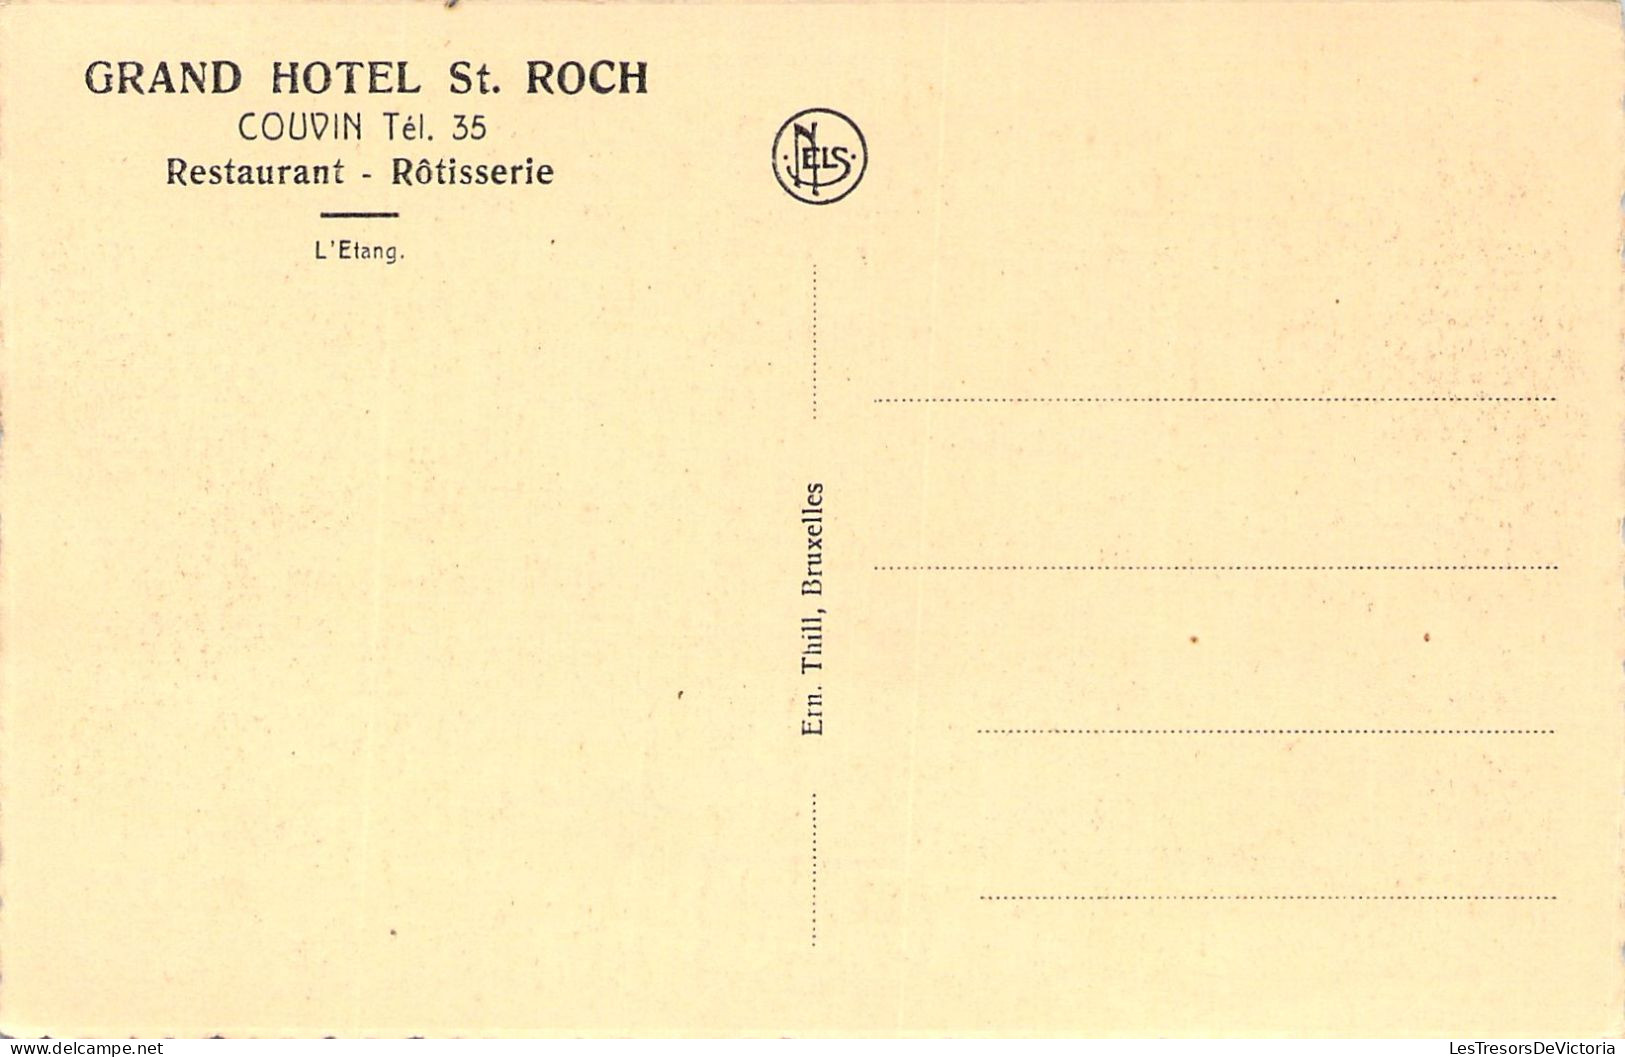 BELGIQUE - COUVIN - Grand Hôtel St Roch - Restaurant Rotisserie - L'étang - Barque - Carte Postale Ancienne - Couvin